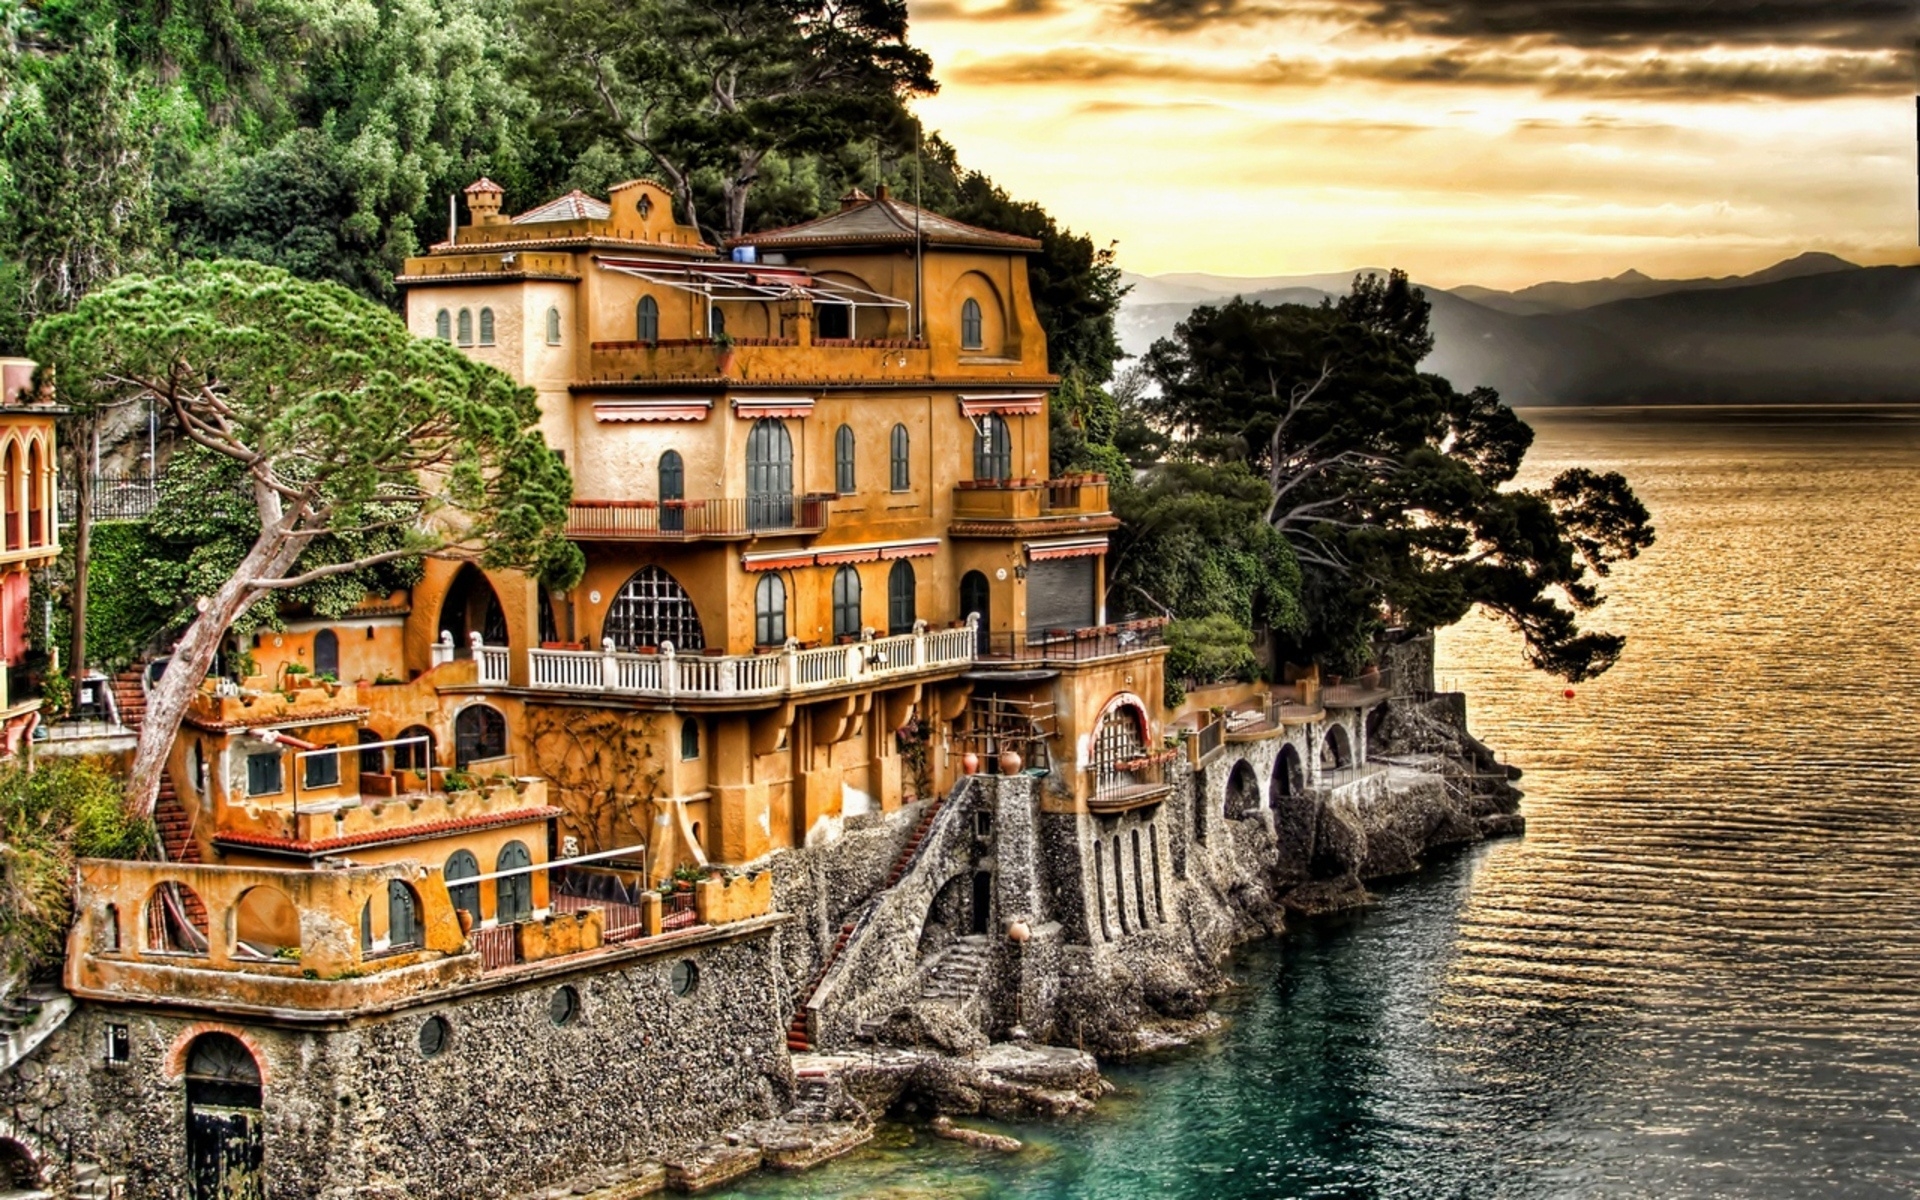 Portofino Coast Genoa for 1920 x 1200 widescreen resolution